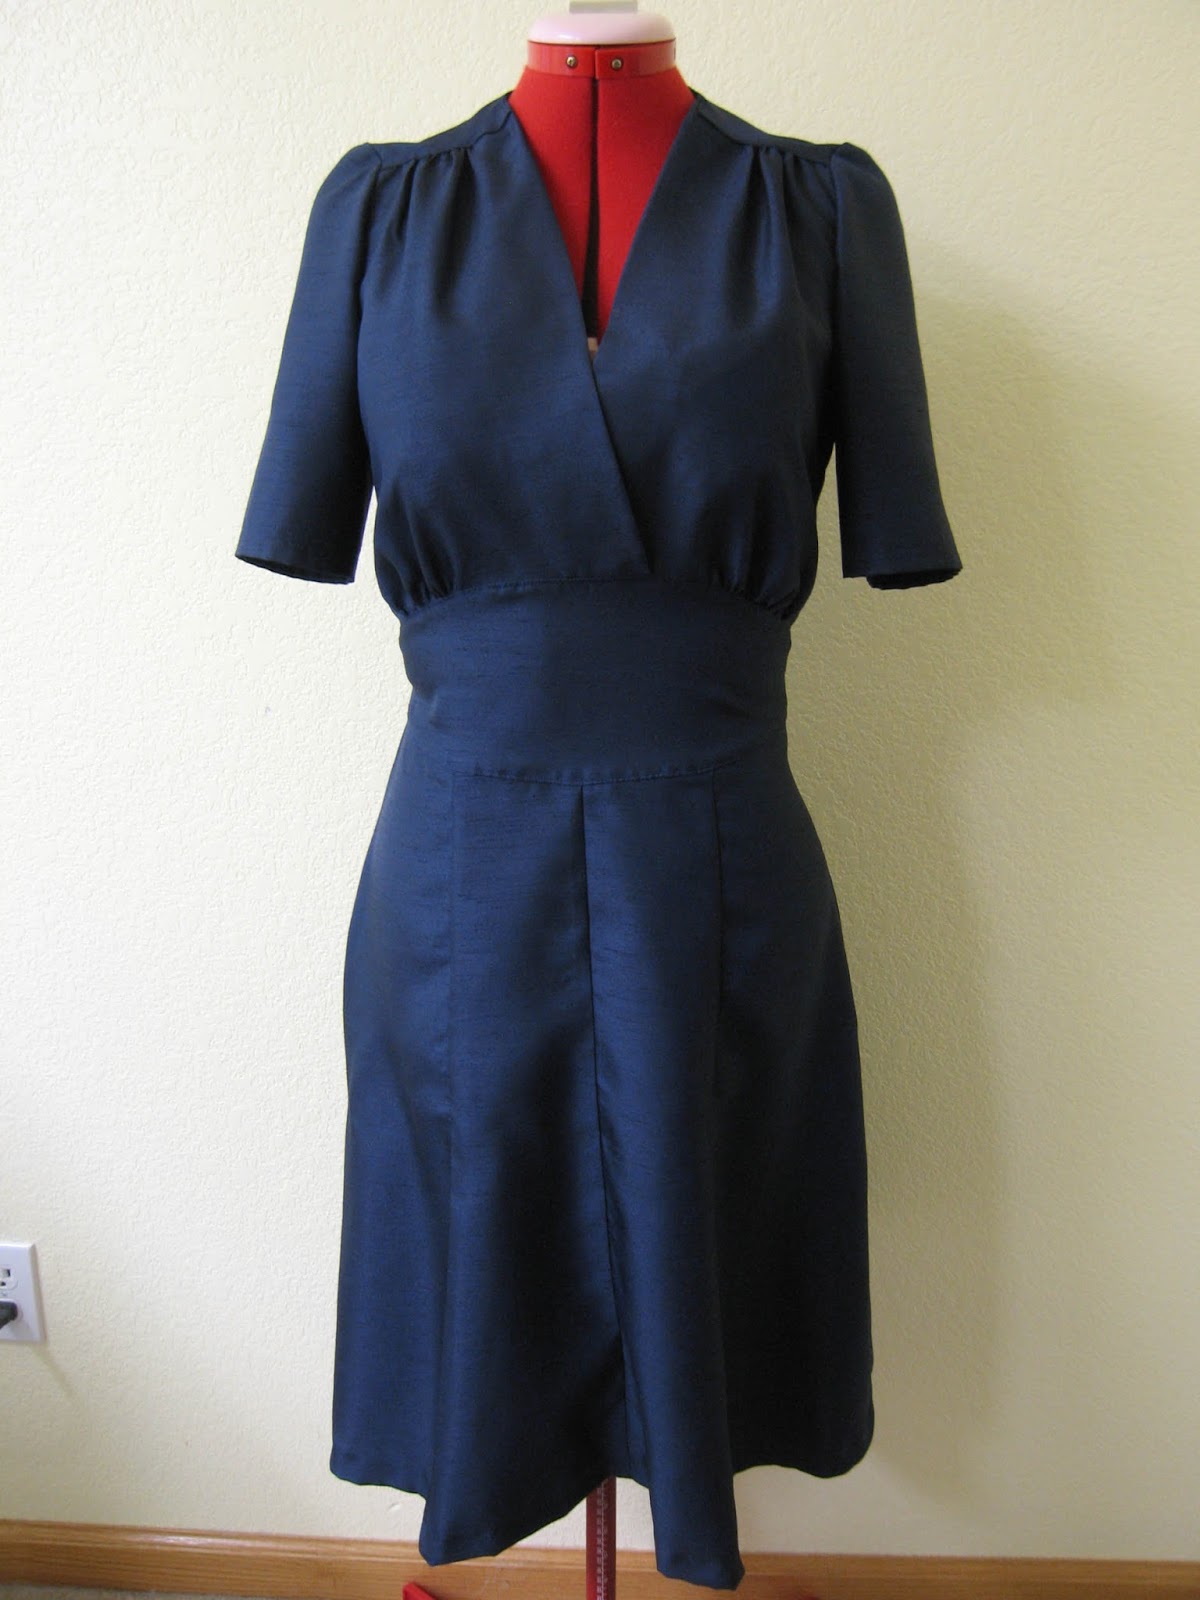 A Joyful Handmaiden: S&S 1940s Swing Dress in Midnight Blue